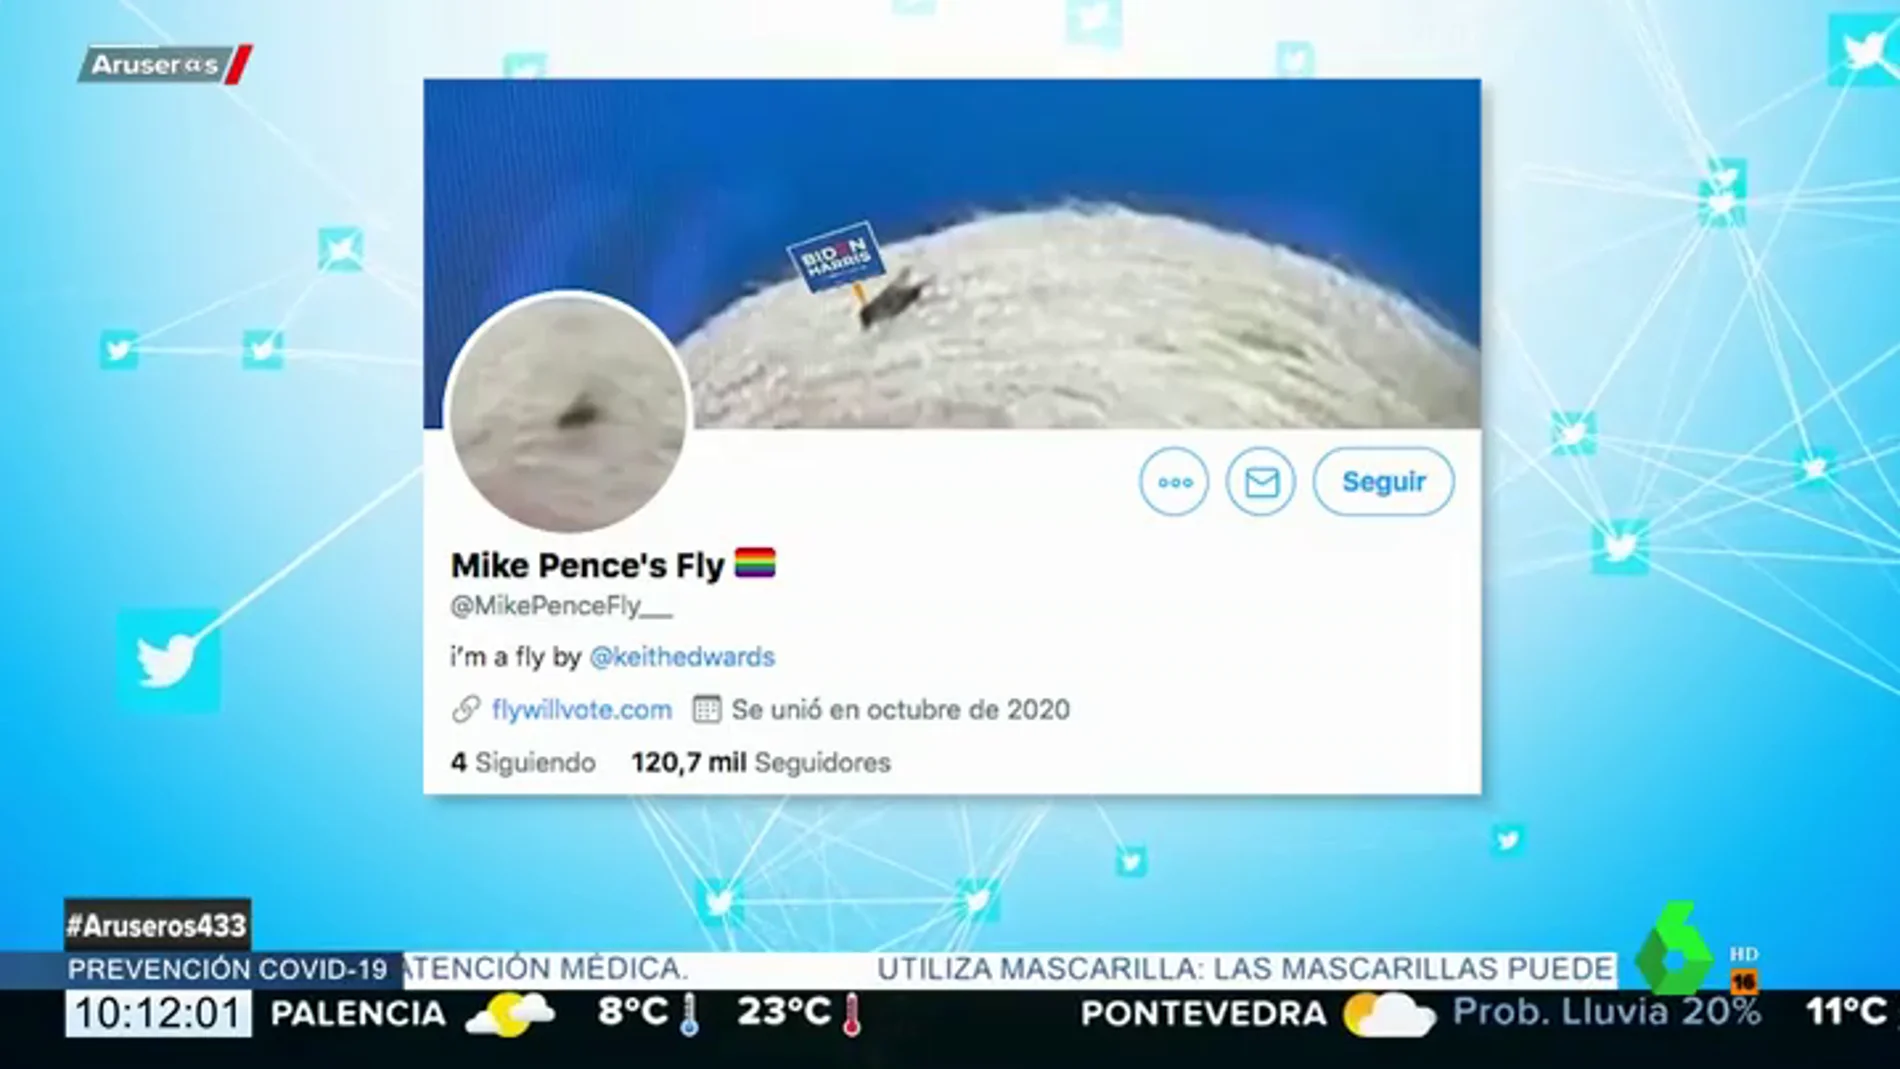 La mosca de Mike Pence ya tiene Twitter 